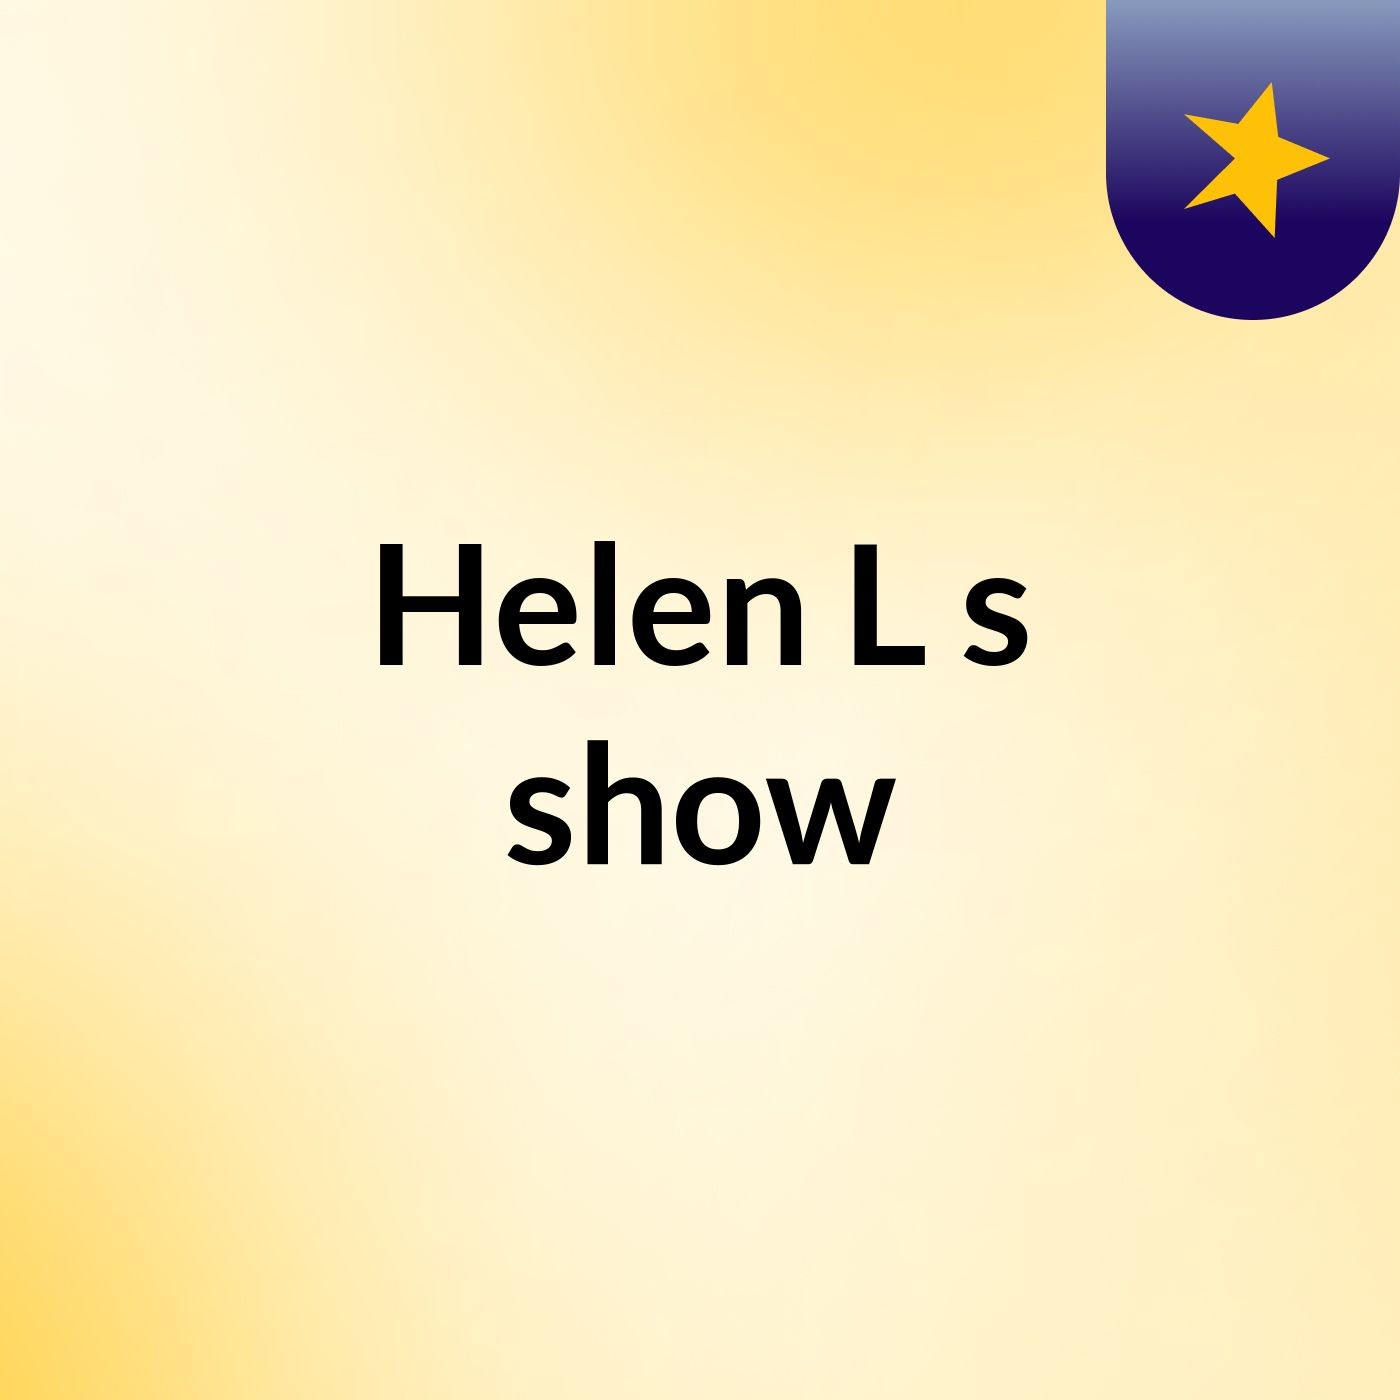 Helen L's show